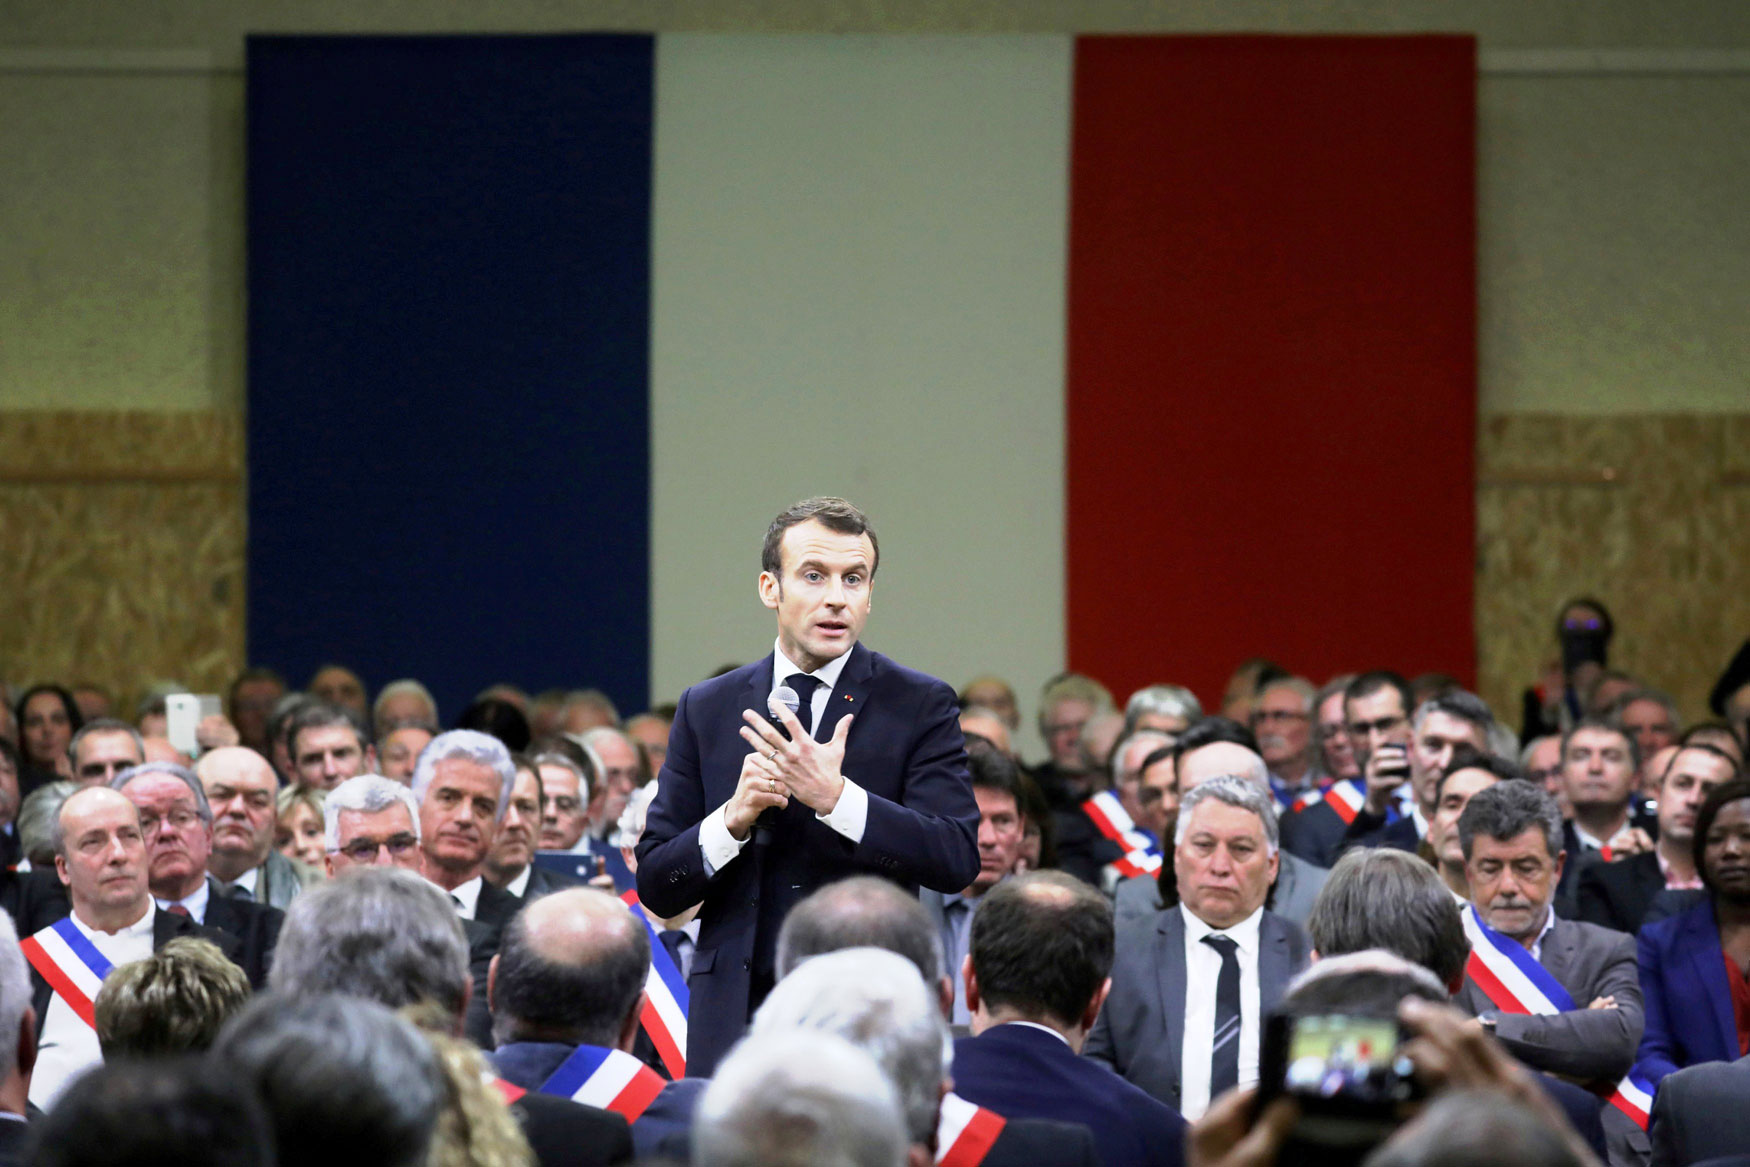 الرئيس الفرنسي امانويل ماكرون يخاطب المئات من رؤساء البلديات